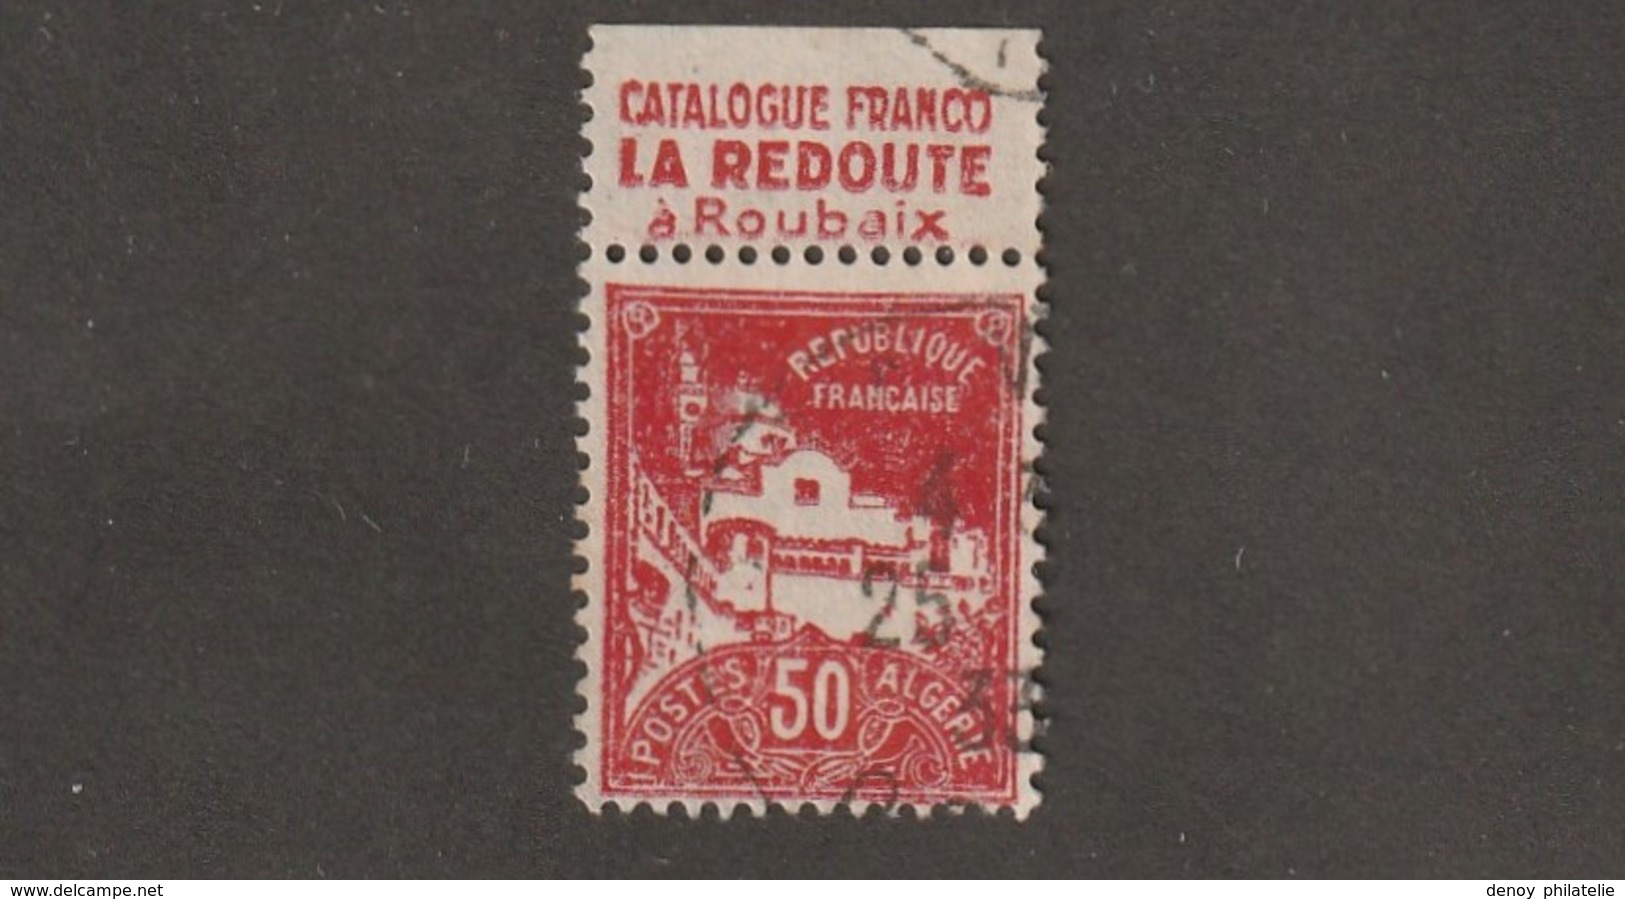 Algérie Timbre N° 79 A Avec Bande Publicitaire La Redoute - Oblitérés